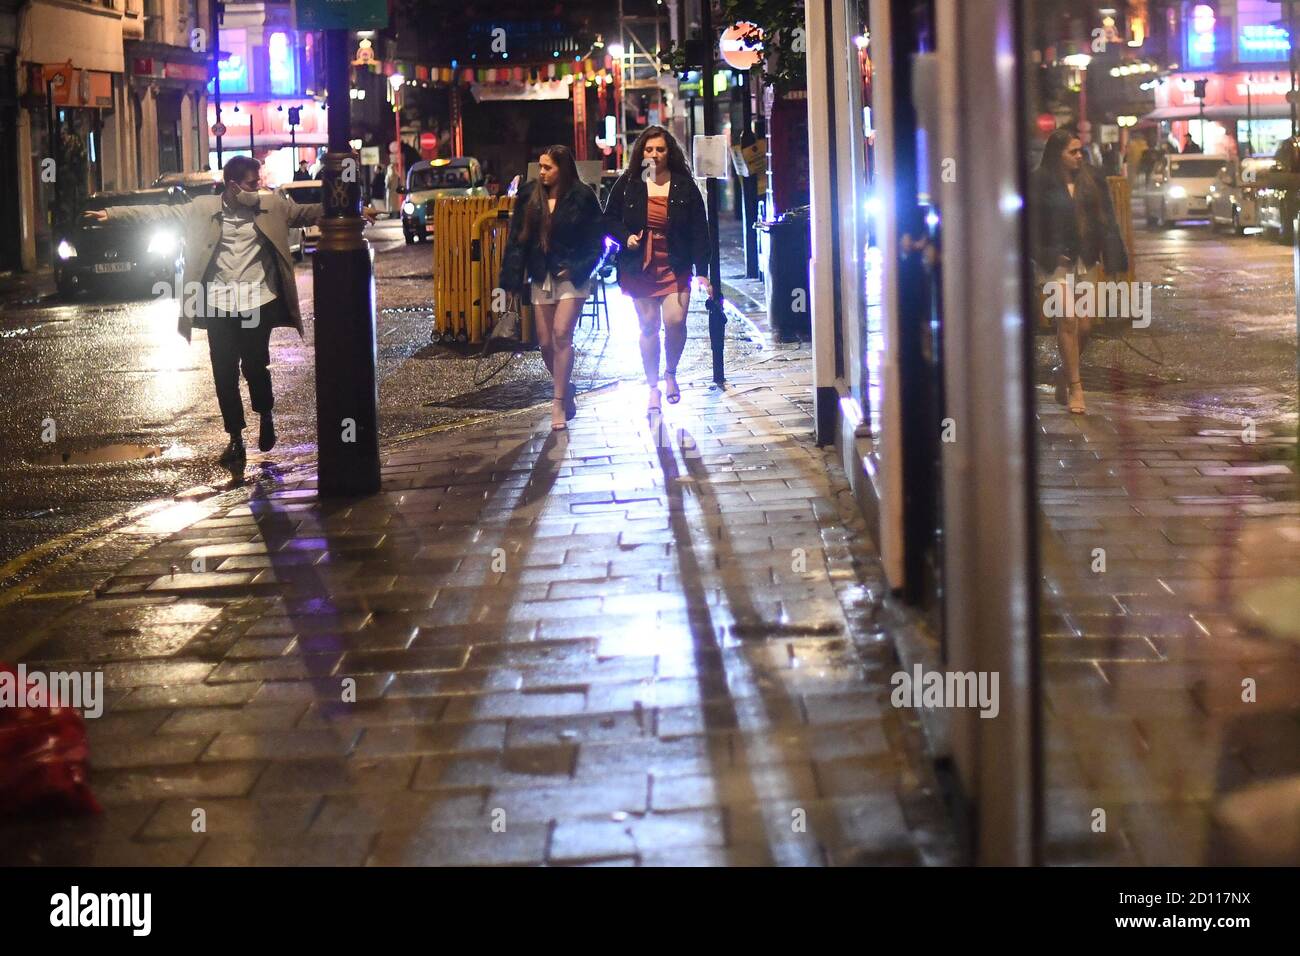 La gente inizia a lasciare Soho, Londra, alle 22:08, seguendo il coprifuoco 10 pub e ristoranti sono soggetti a per combattere l'aumento dei casi di coronavirus in Inghilterra. Foto Stock